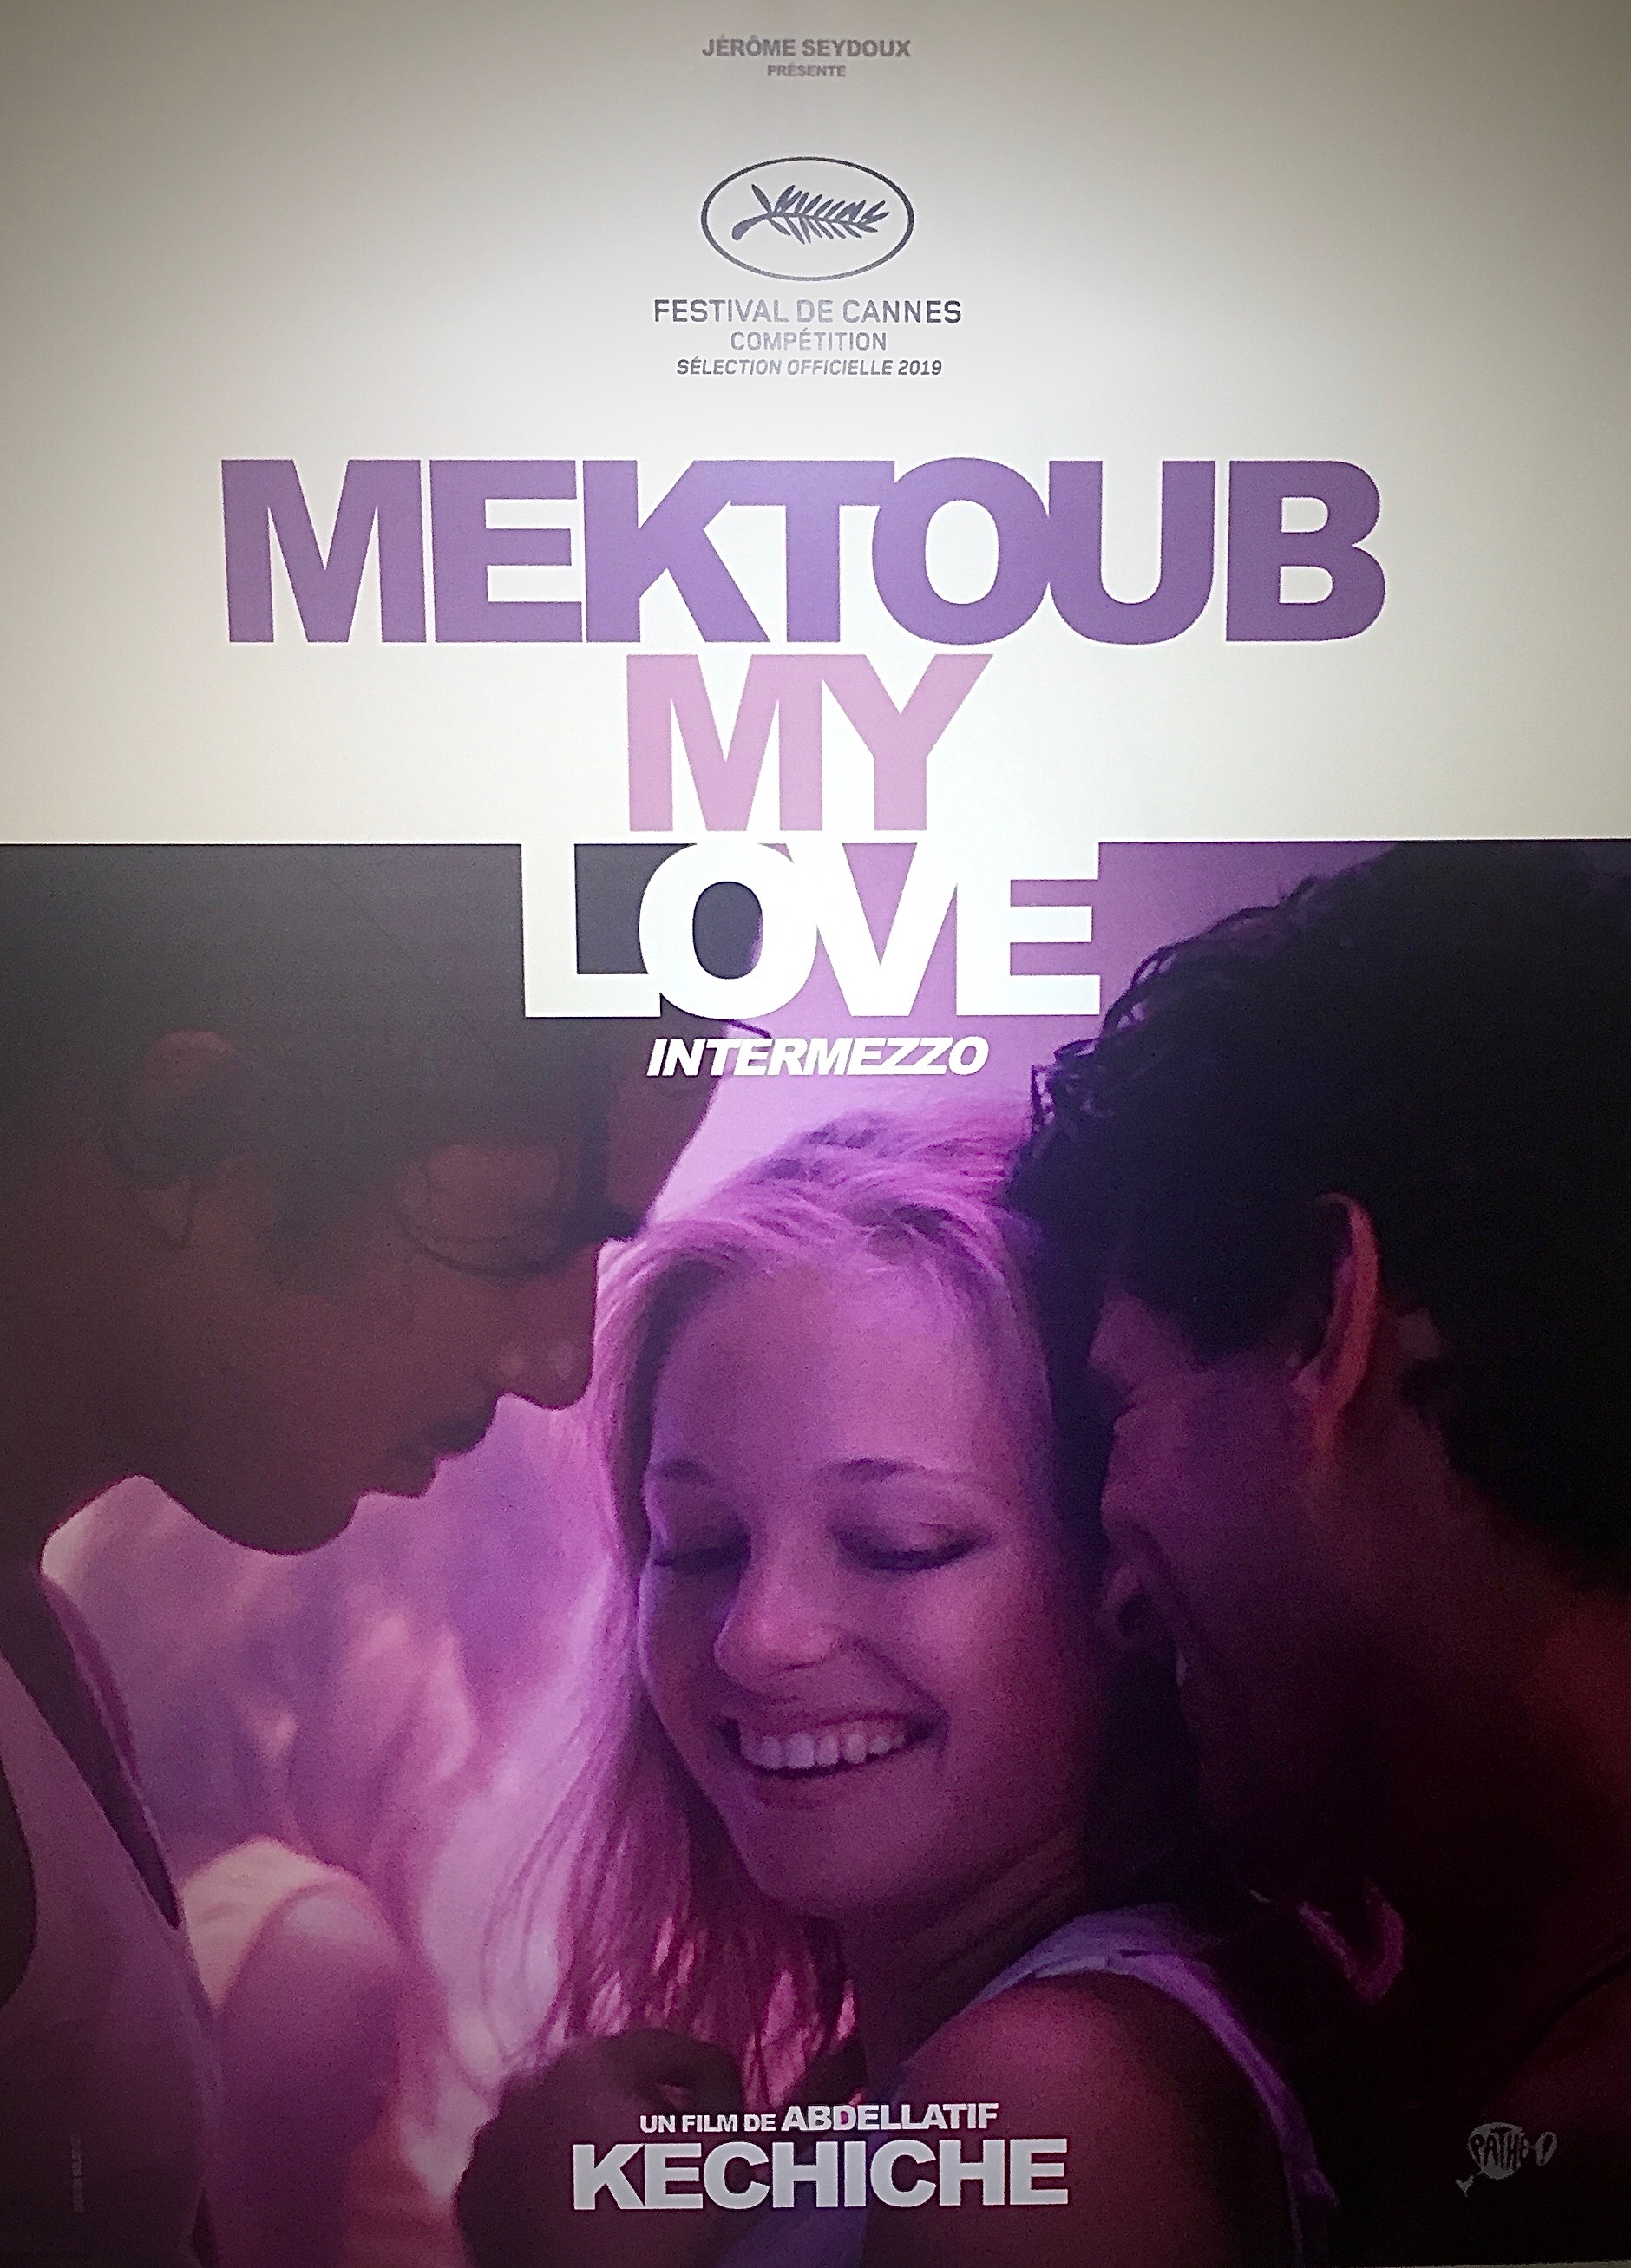 Watch online mektoub my love intermezzo